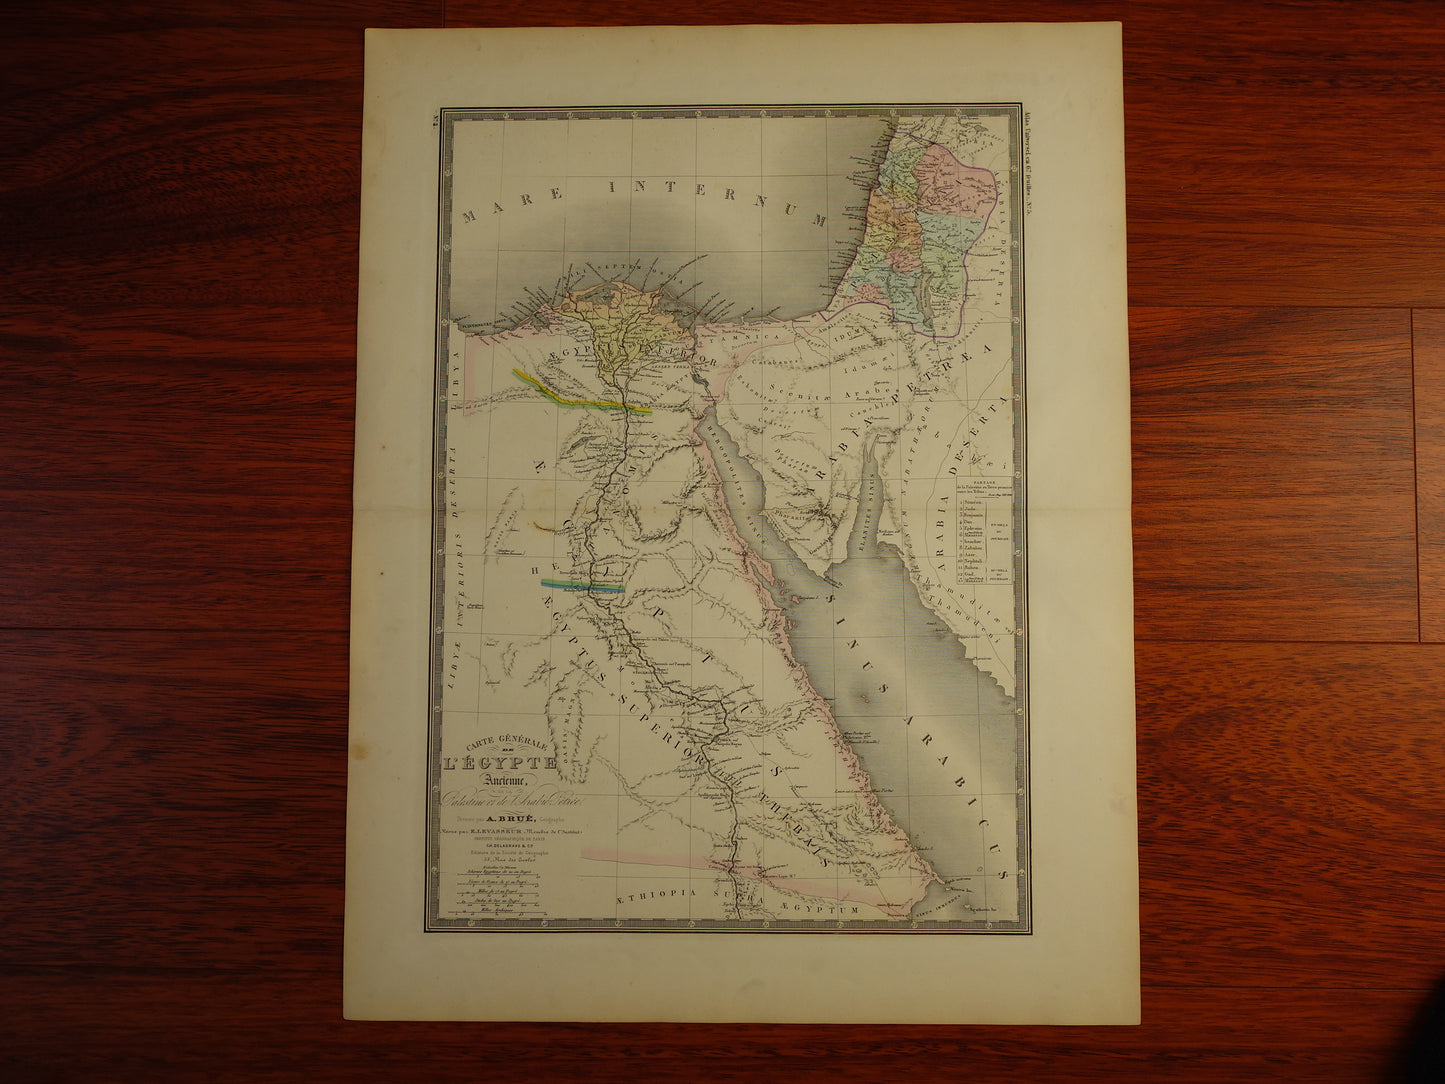 EGYPTE oude kaart van Egypte en Palestina in de oudheid Grote antieke landkaart van het Oude Egypte - vintage poster